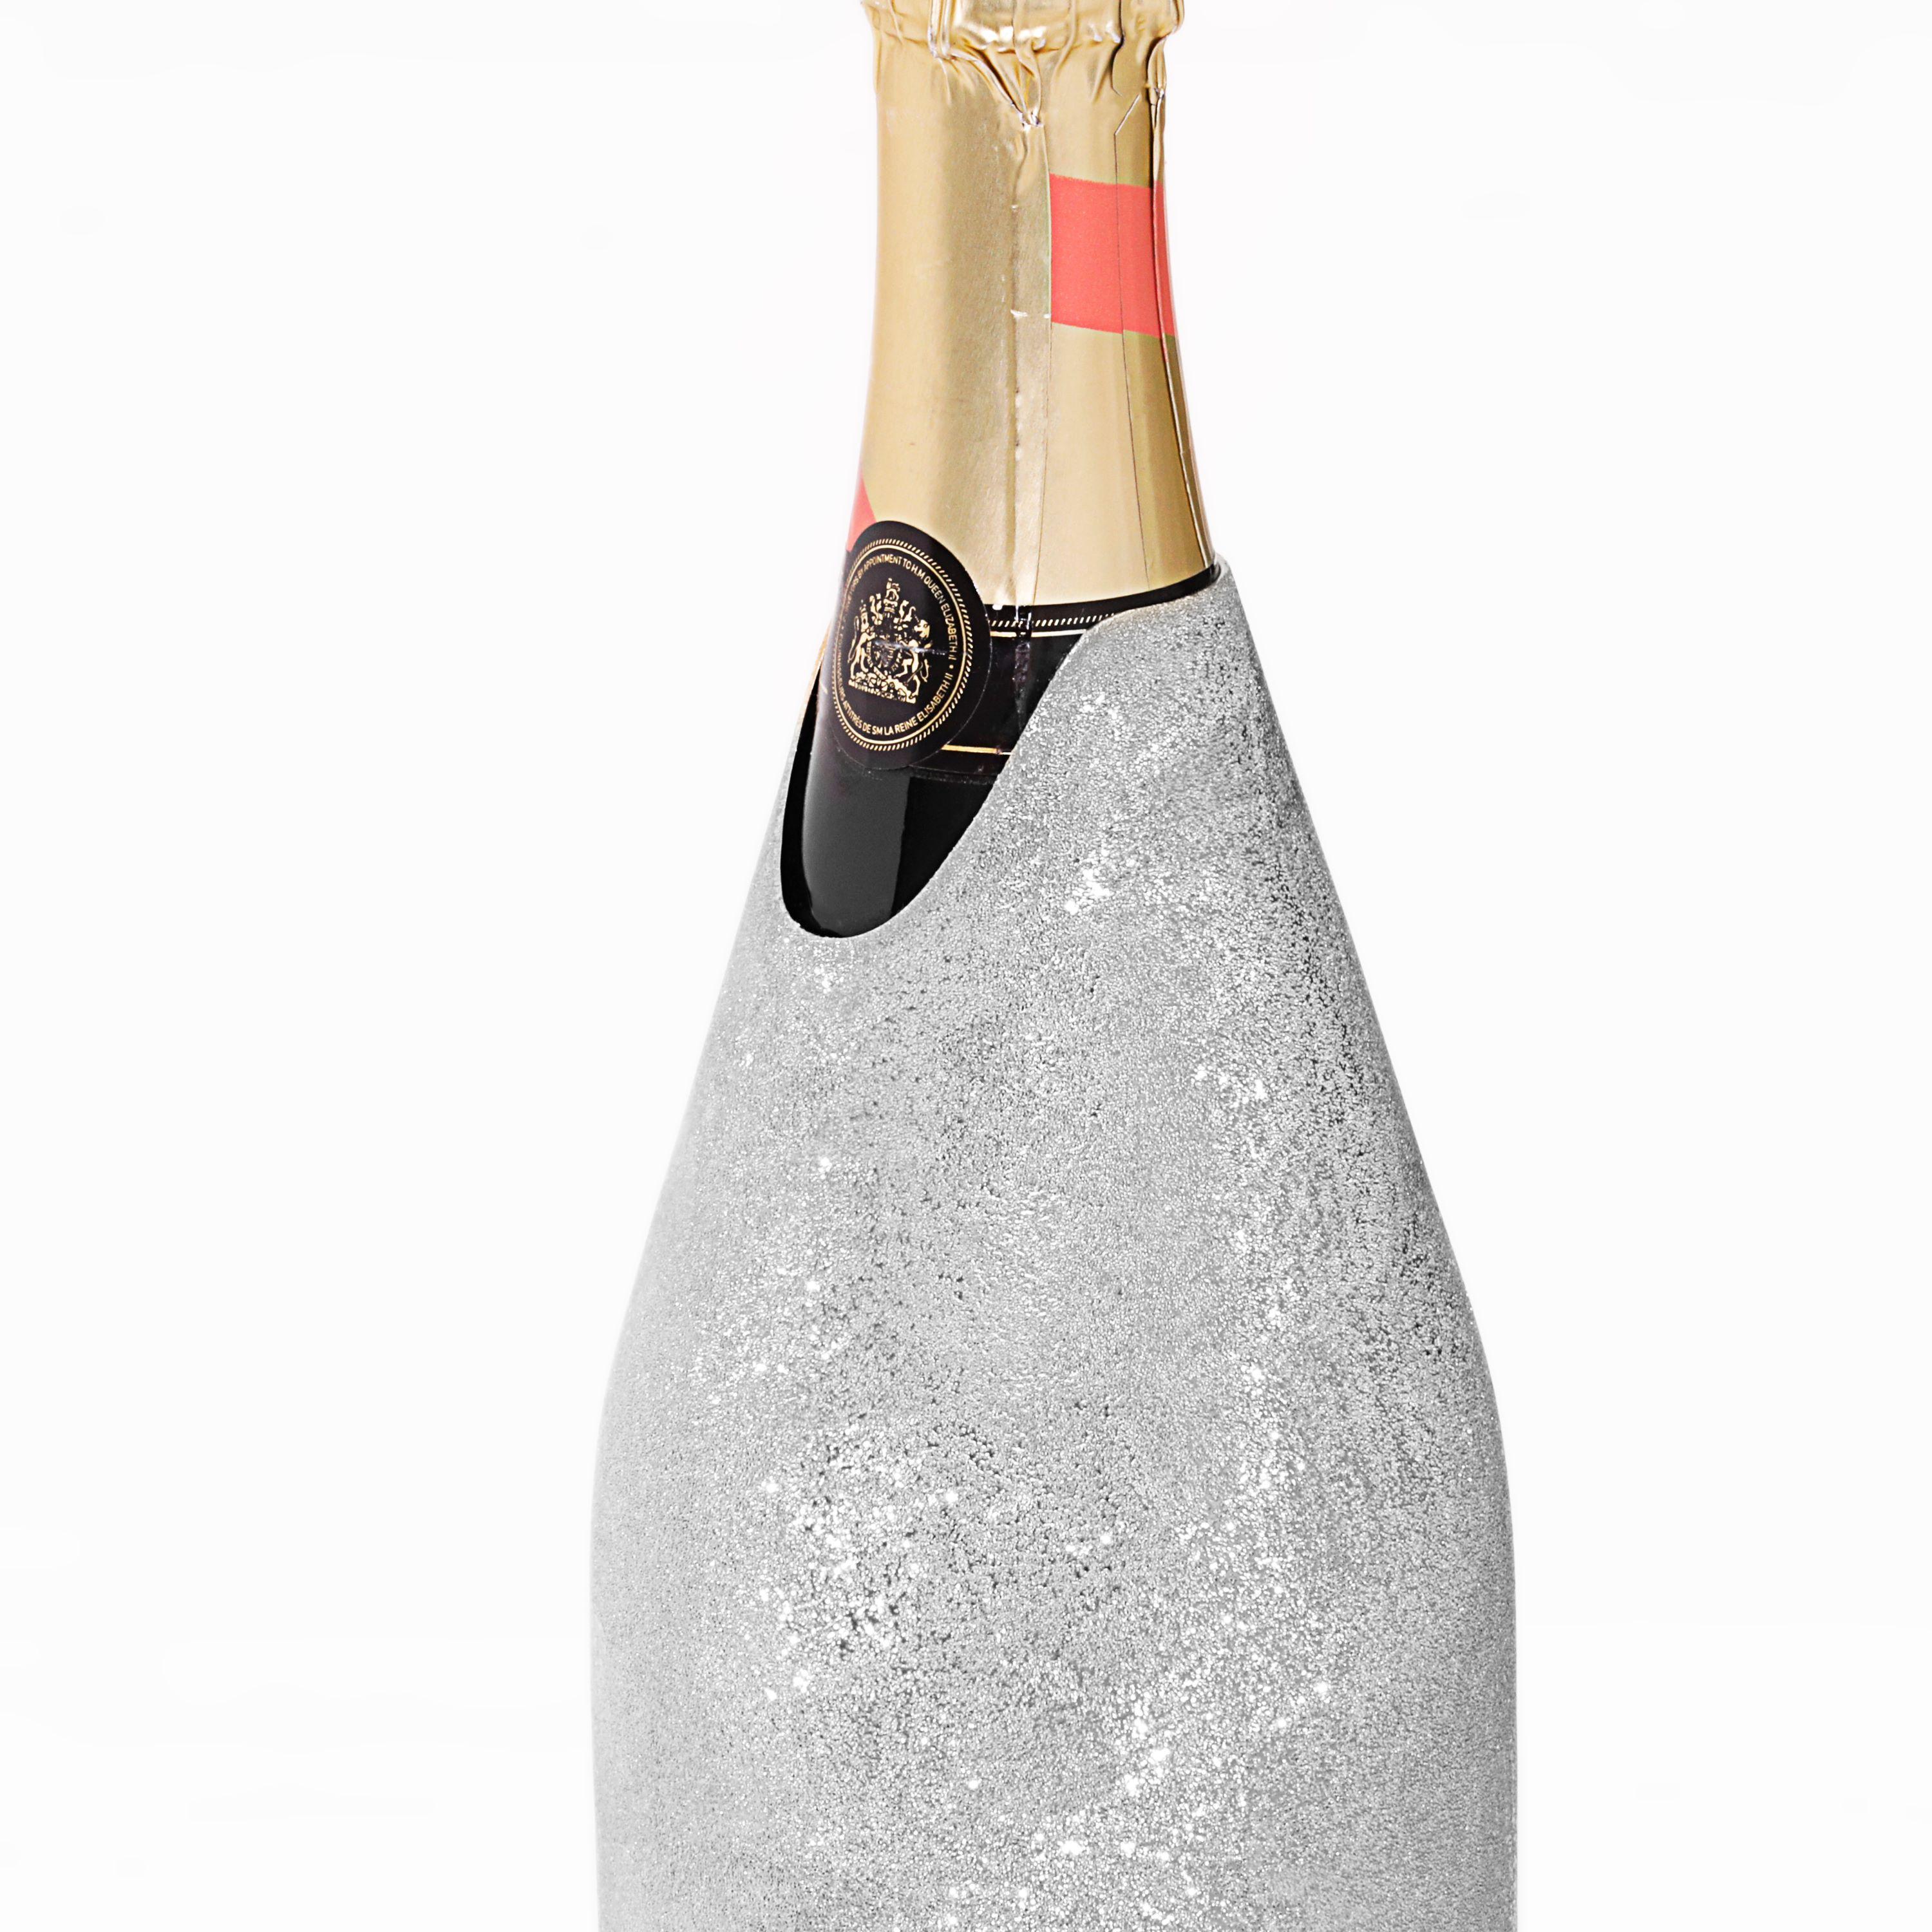 Italian K-OVER Champagne, MOON PERSONALIZZABILE, argento 999/°°, Italia For Sale